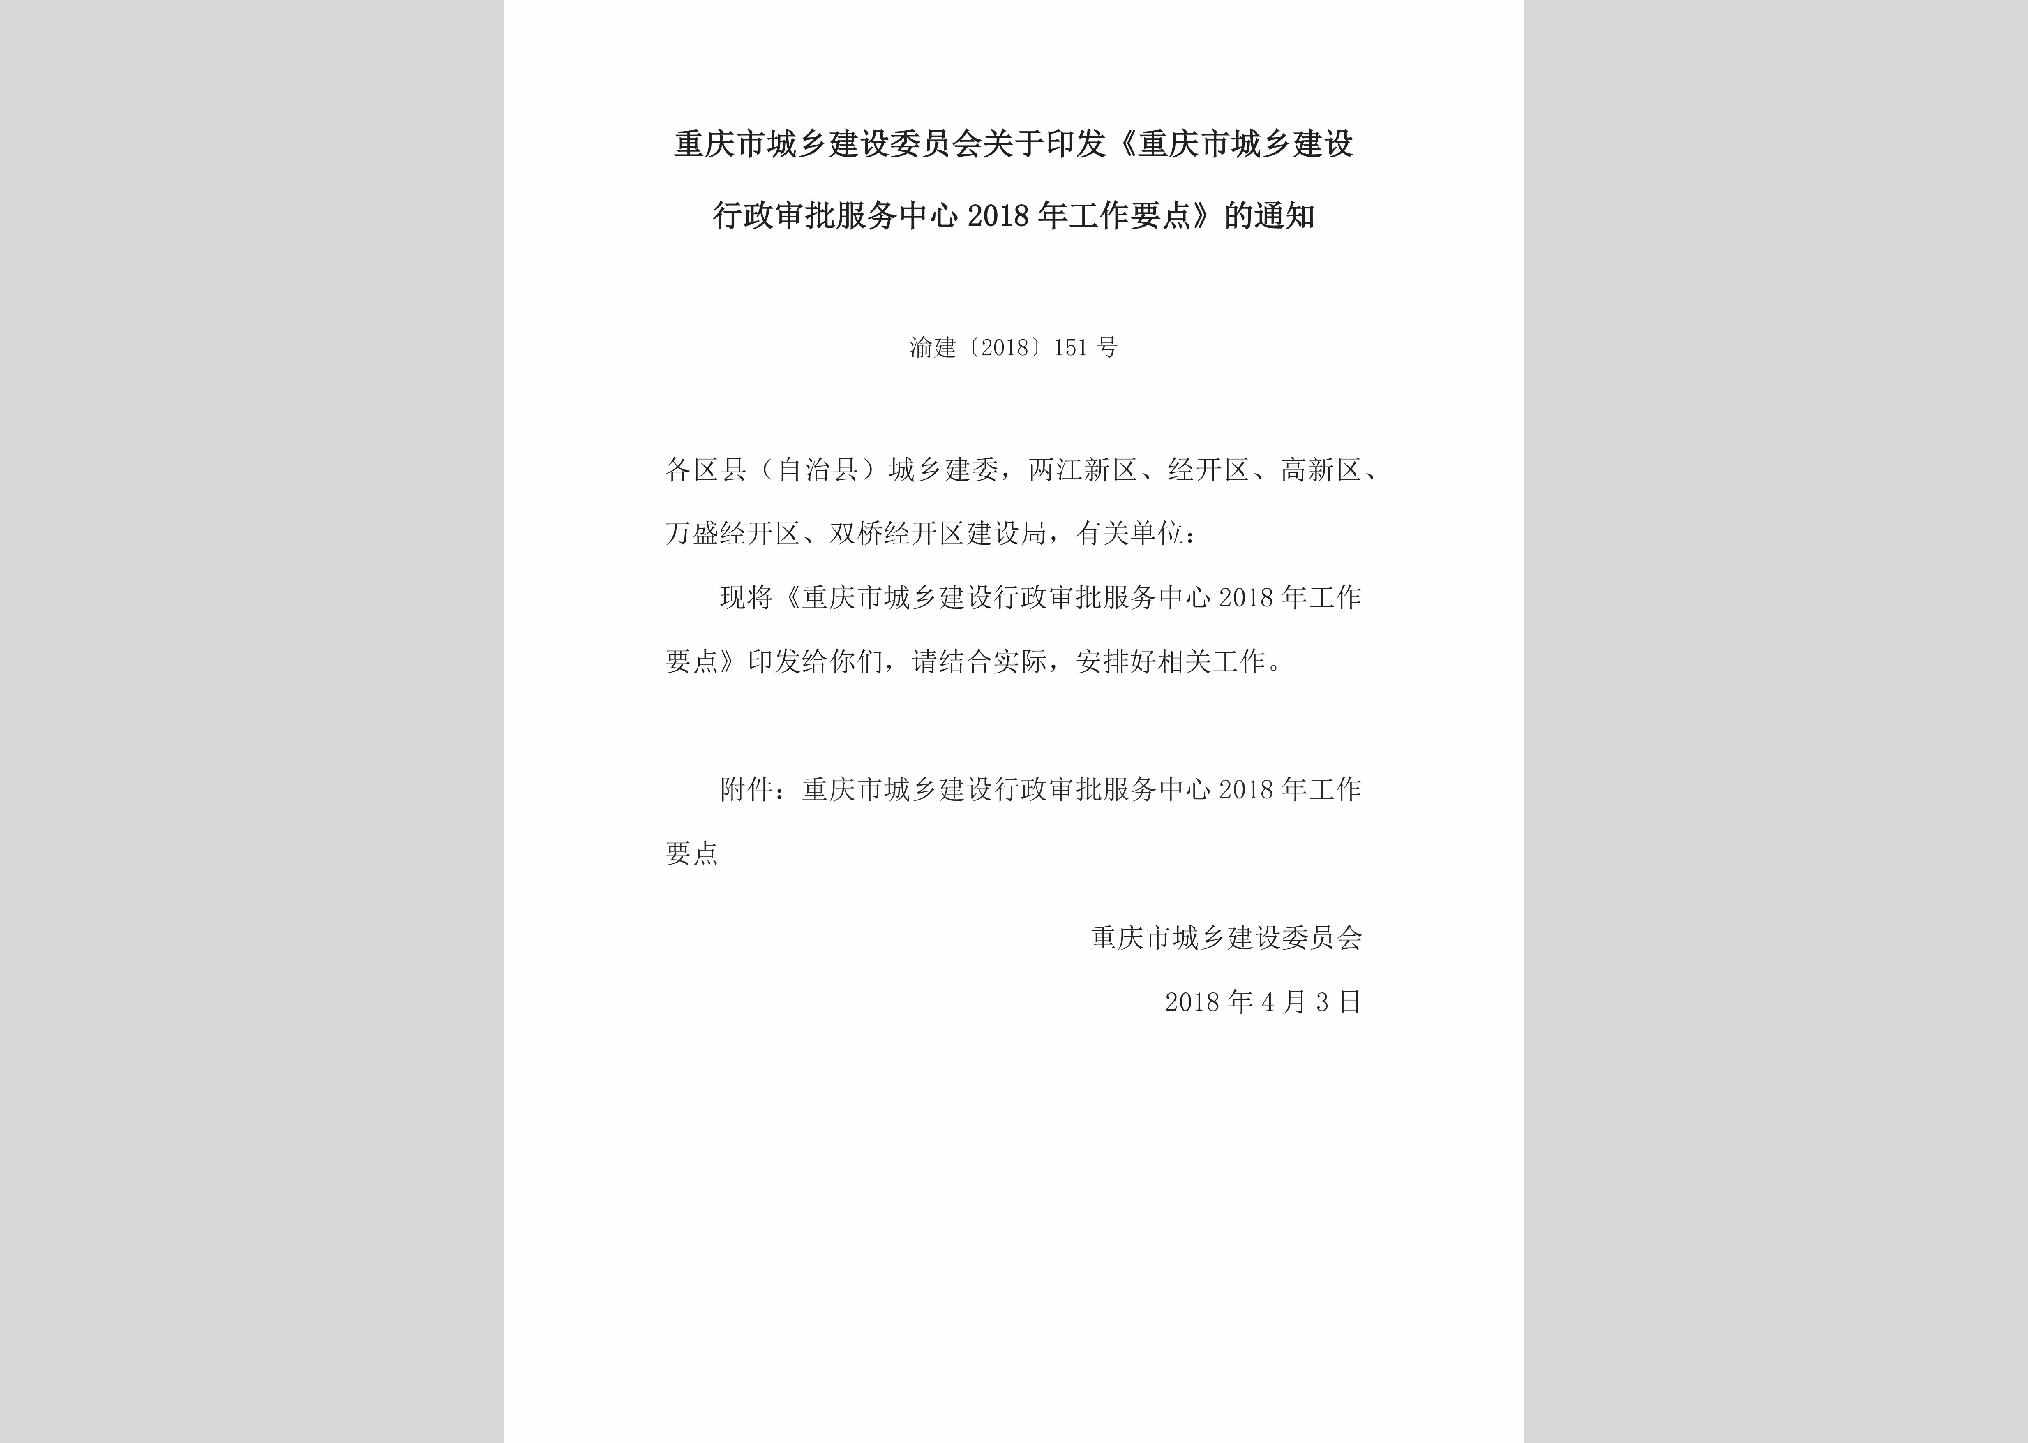 渝建[2018]151号：关于印发《重庆市城乡建设行政审批服务中心2018年工作要点》的通知